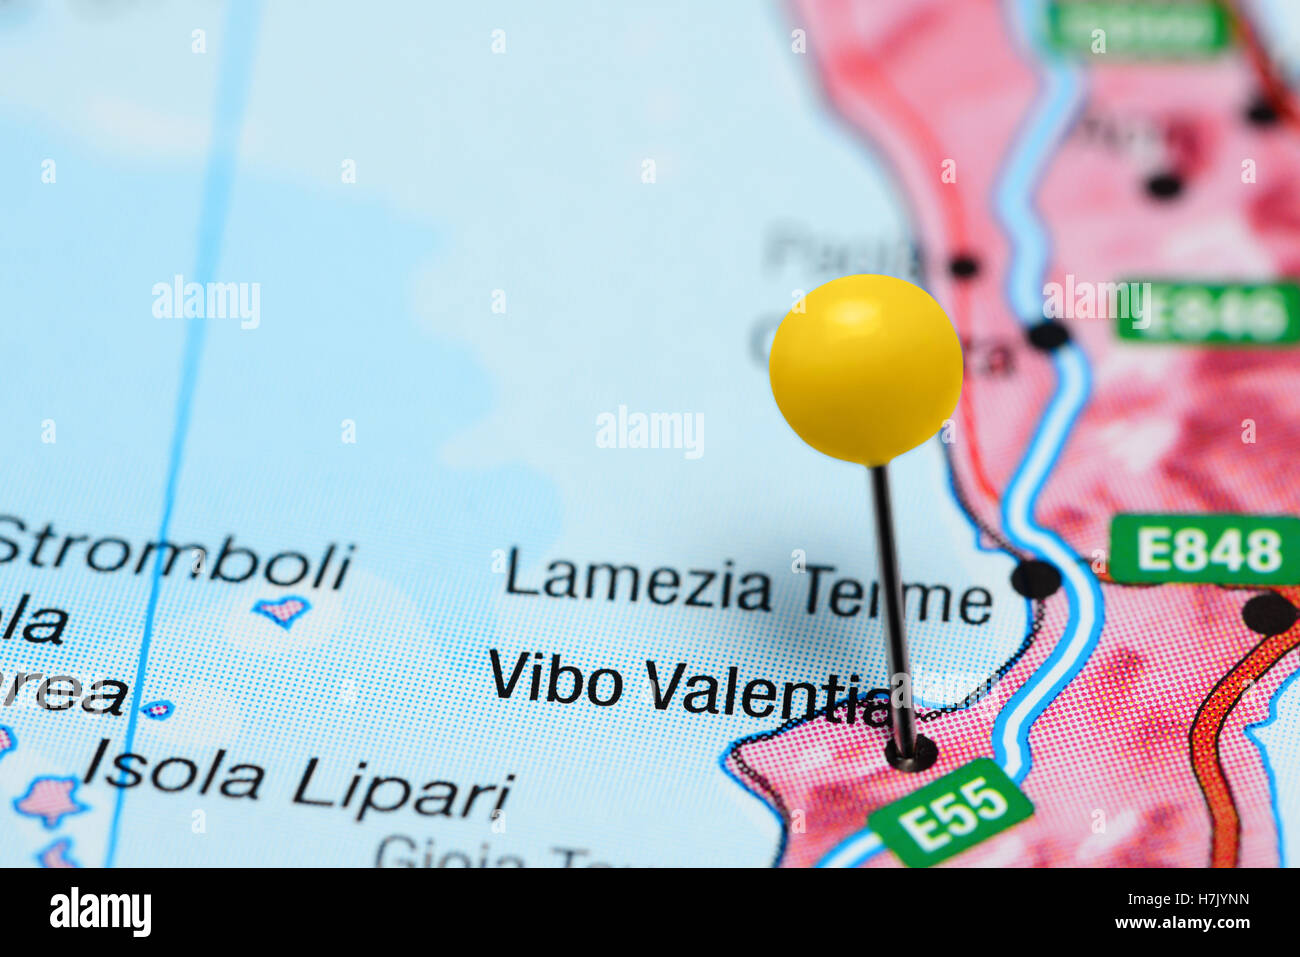 Vibo Valentia épinglée sur une carte de l'Italie Banque D'Images